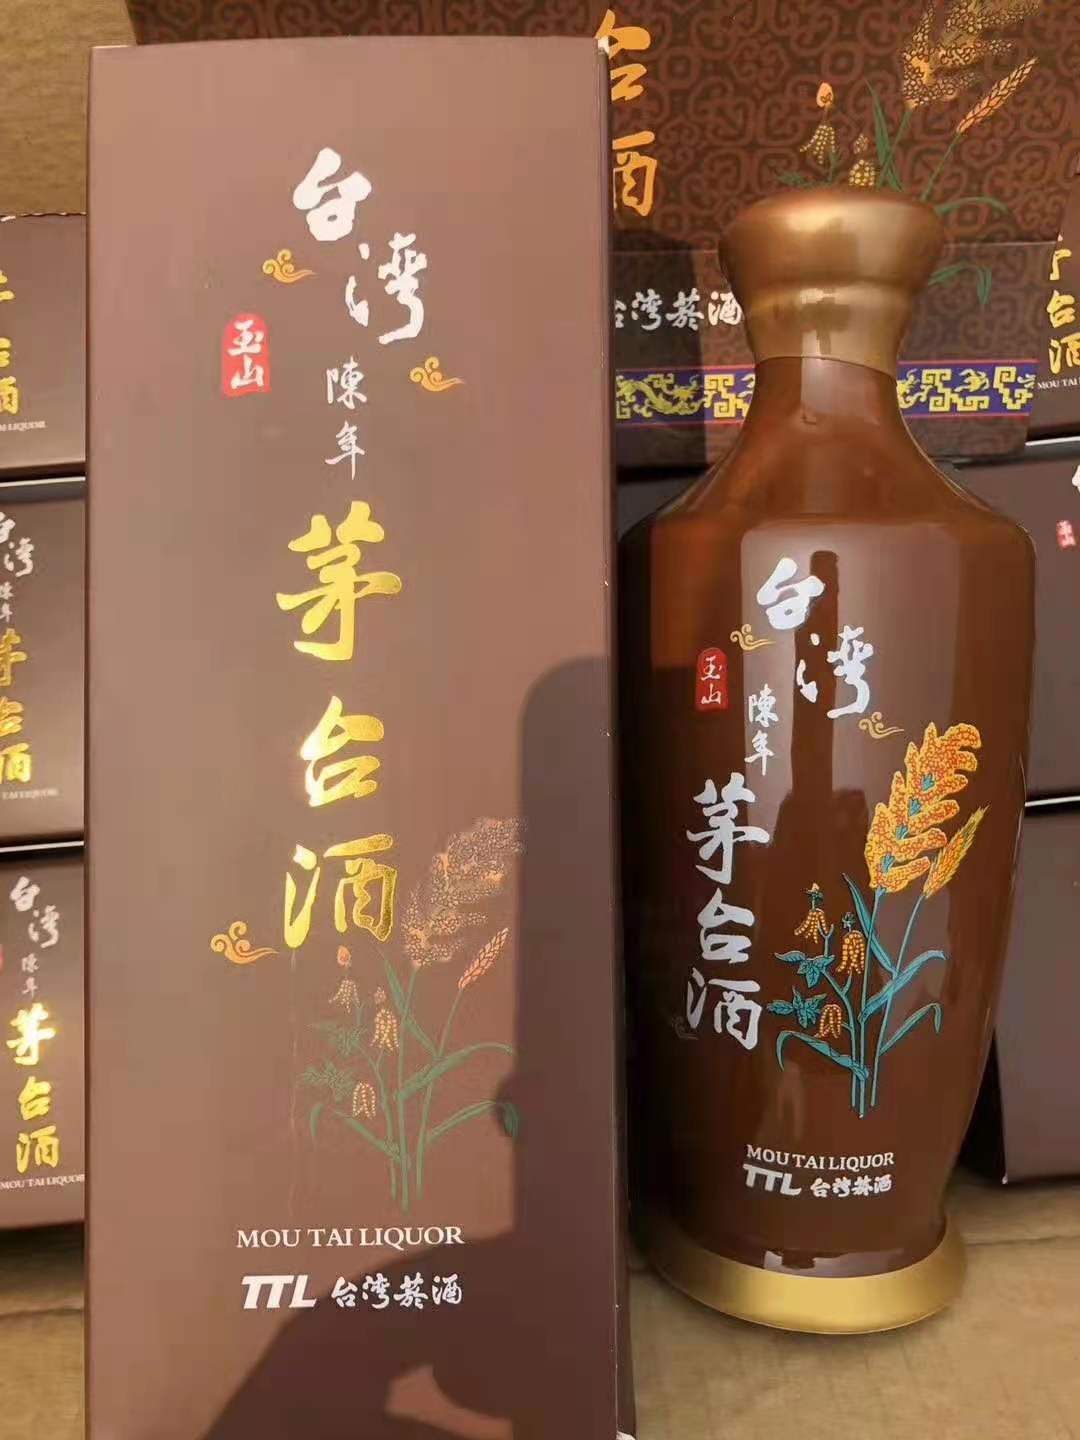 中国台湾玉山陈年**高粱酒酱香型52度0.5公升